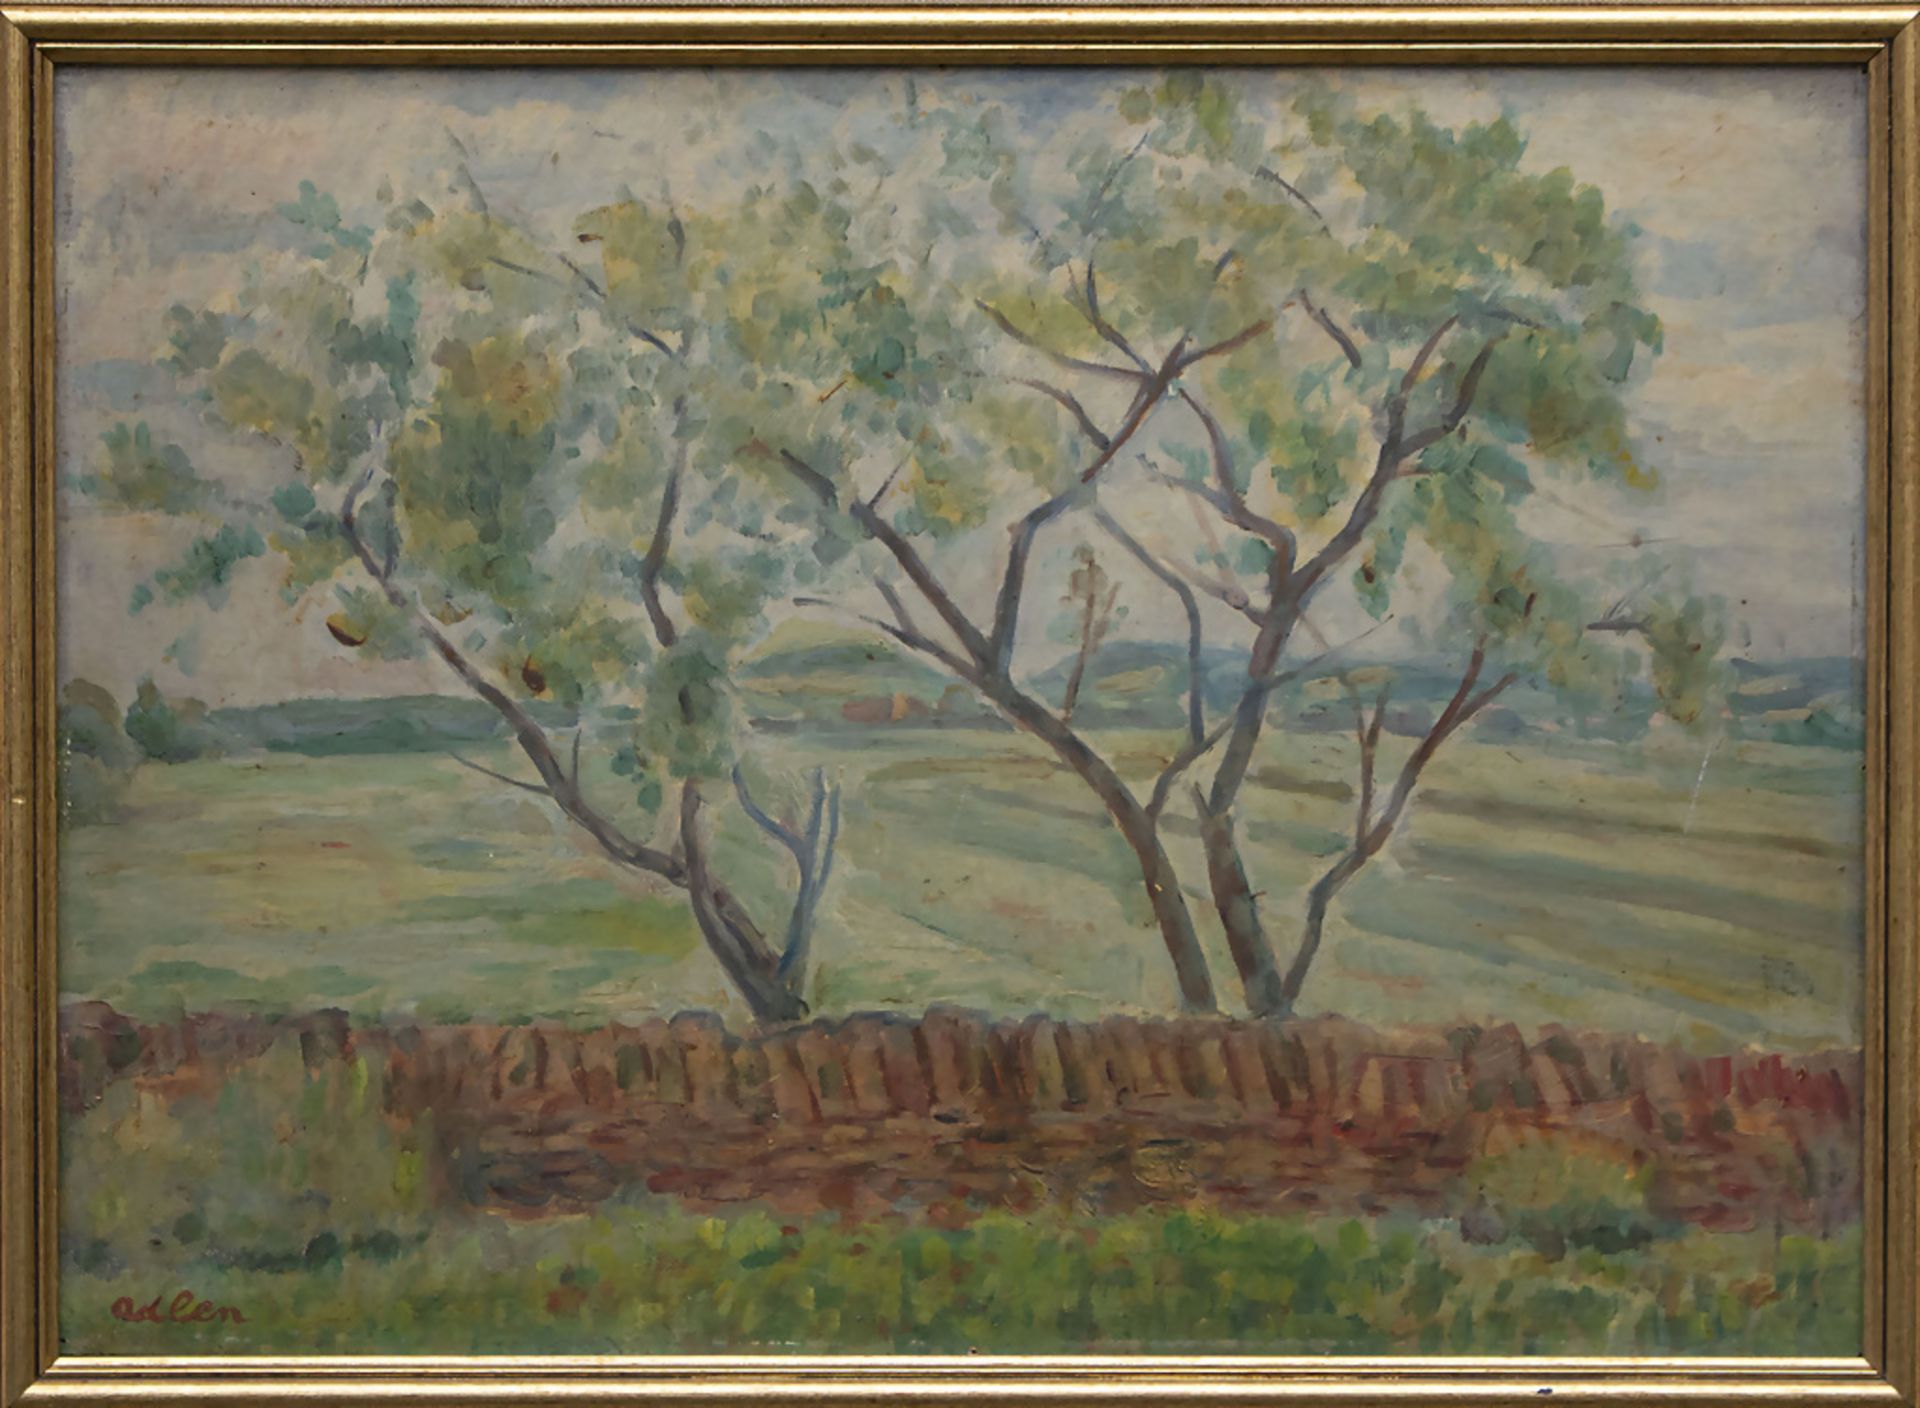 Michel ADLEN (1898-1980), 'Landschaft mit Bäumen' / 'landscape with trees', 1945